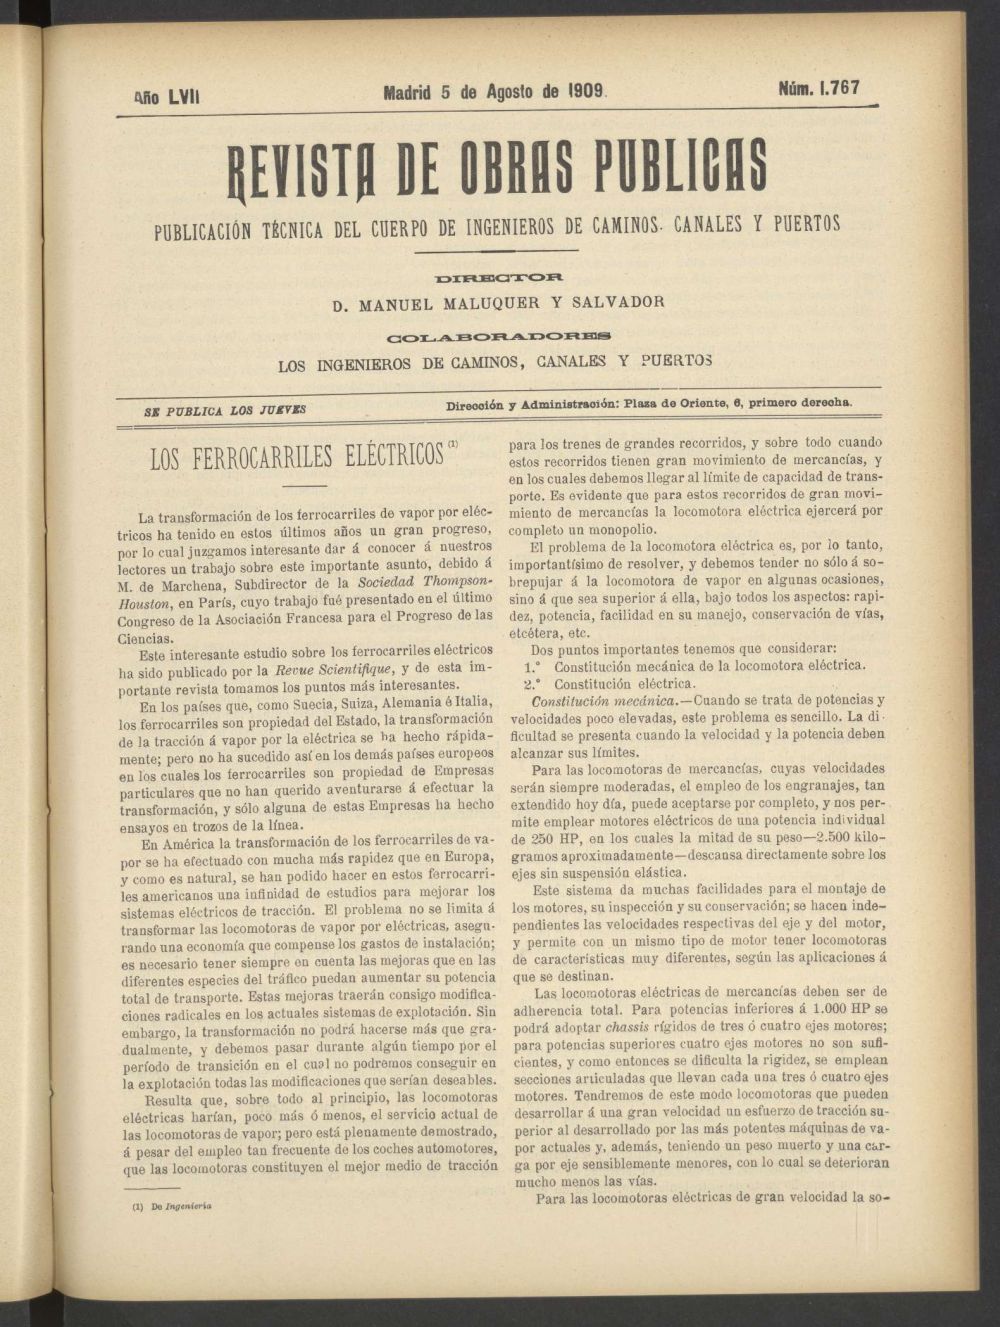 Revista de obras pblicas del 5 de agosto de 1909